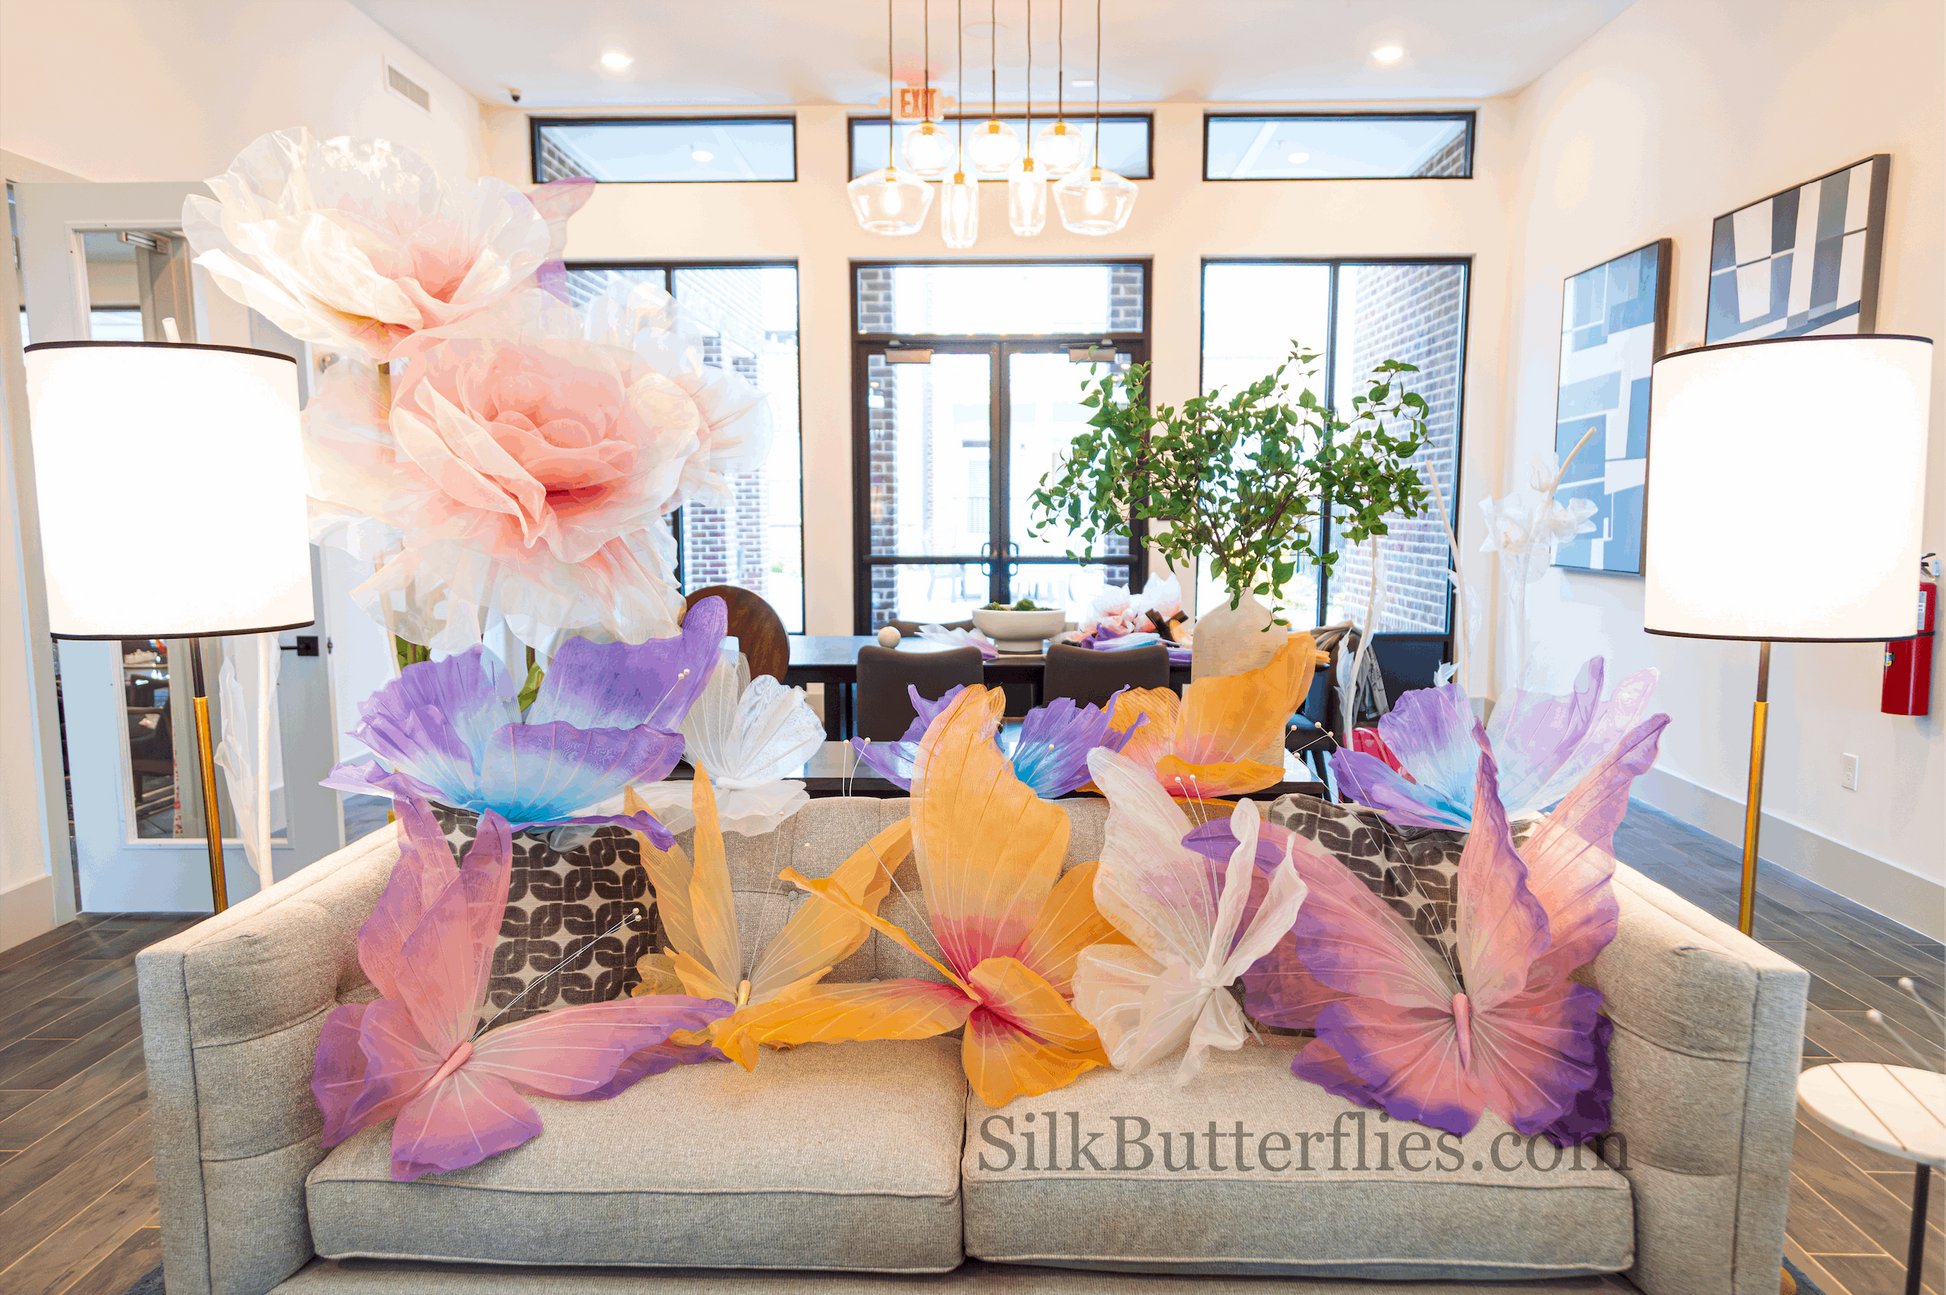 Butterflies for event decor